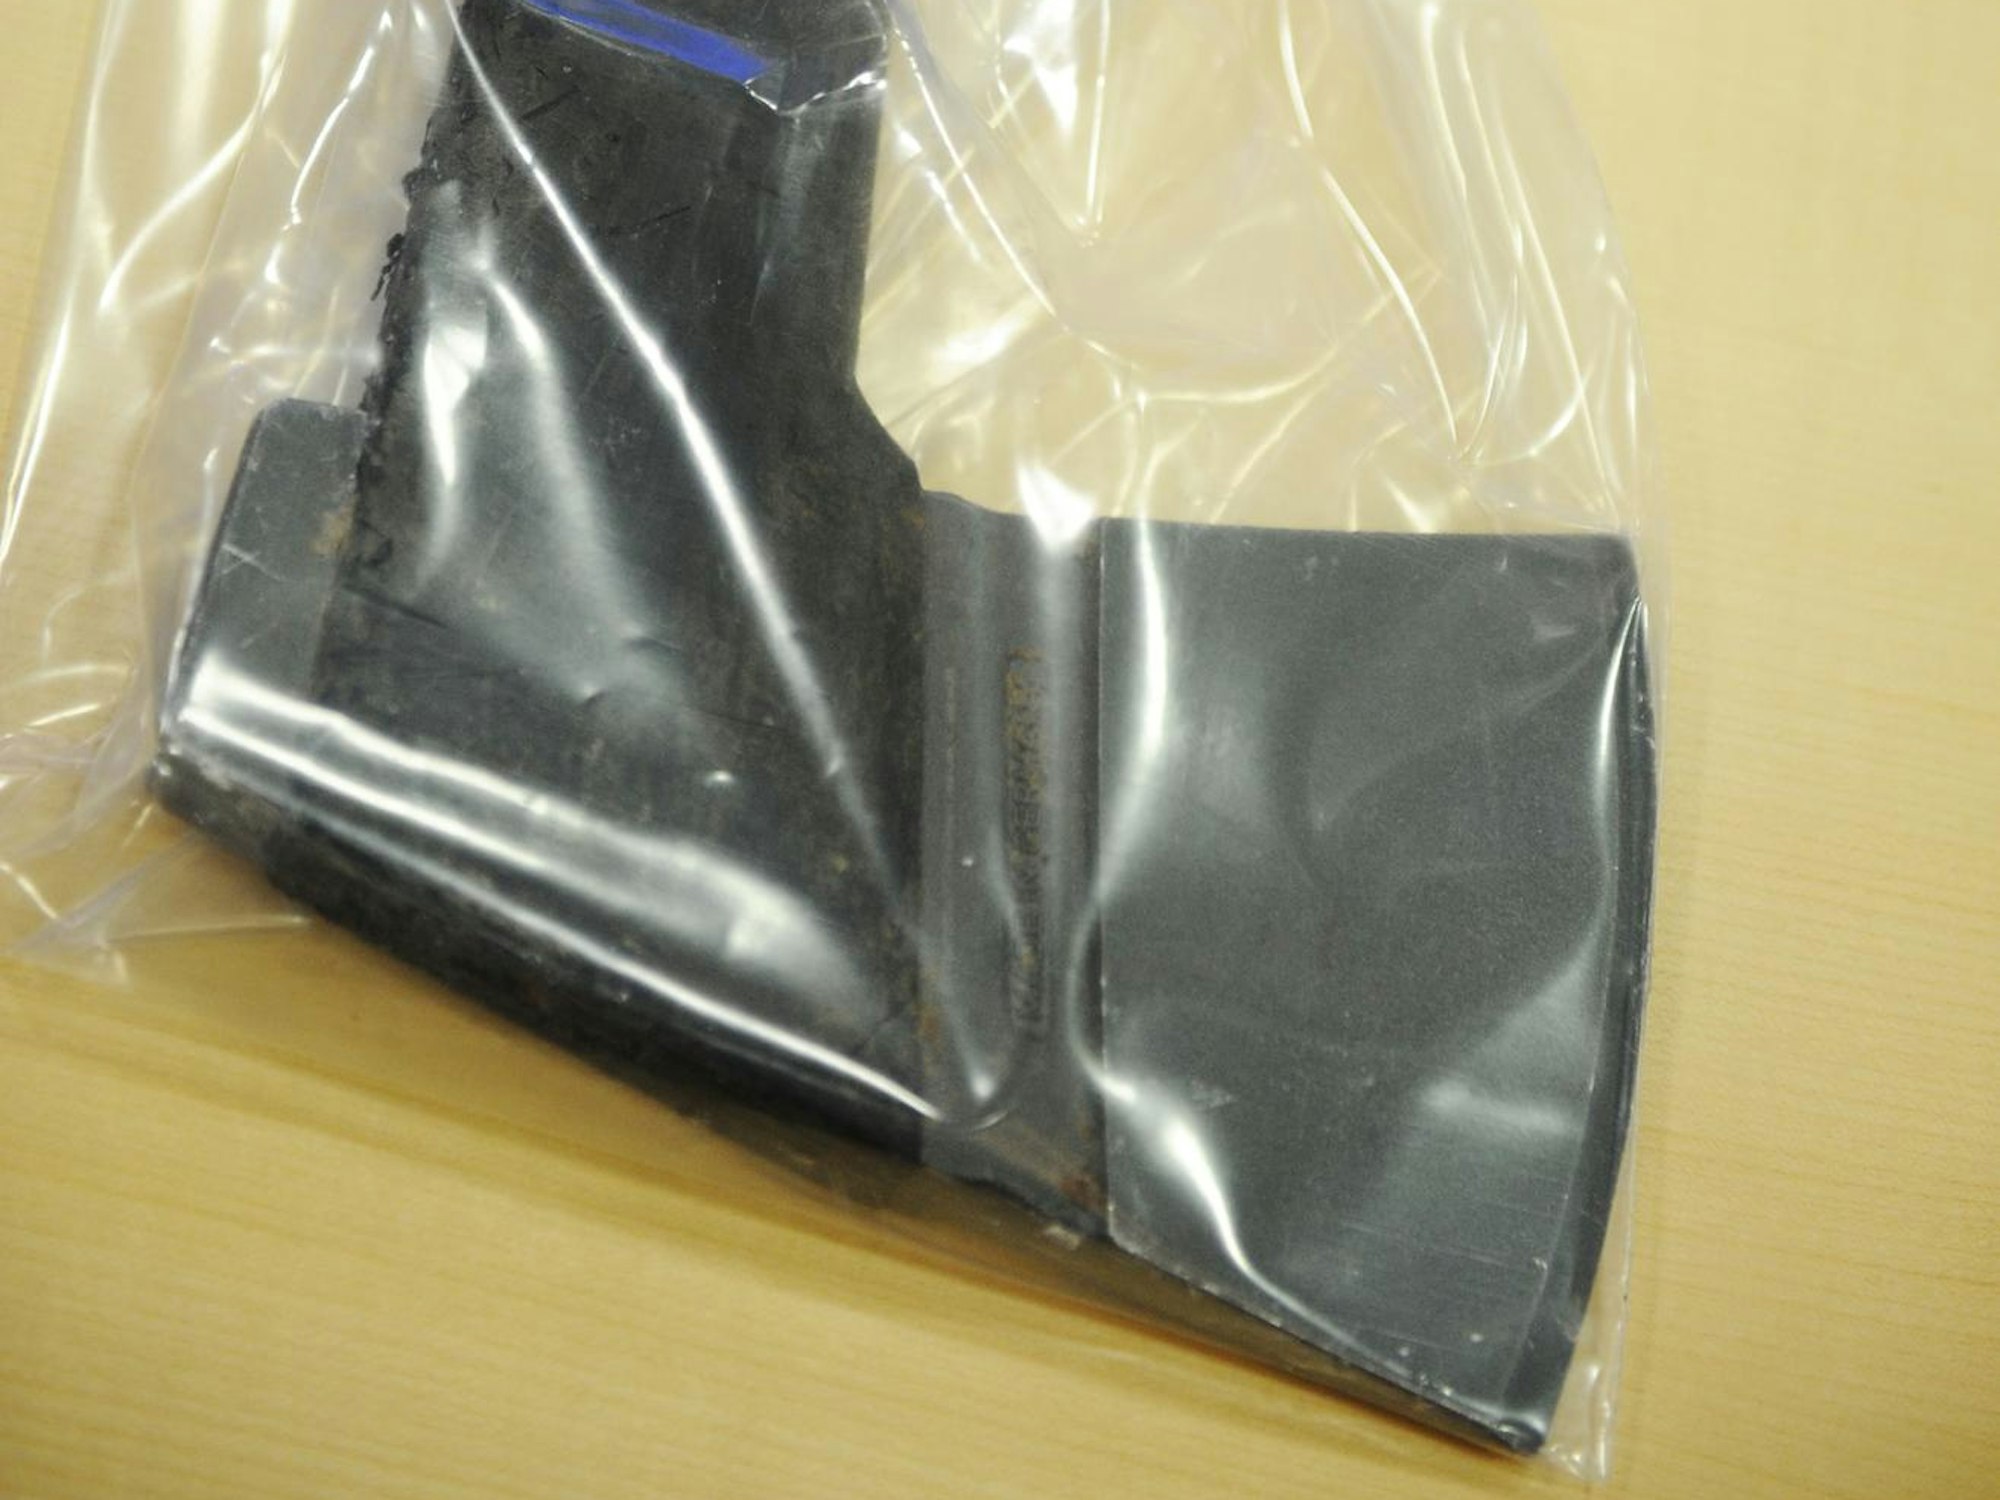 Eine Axt in einer durchsichtigen Plastiktüte der Polizei